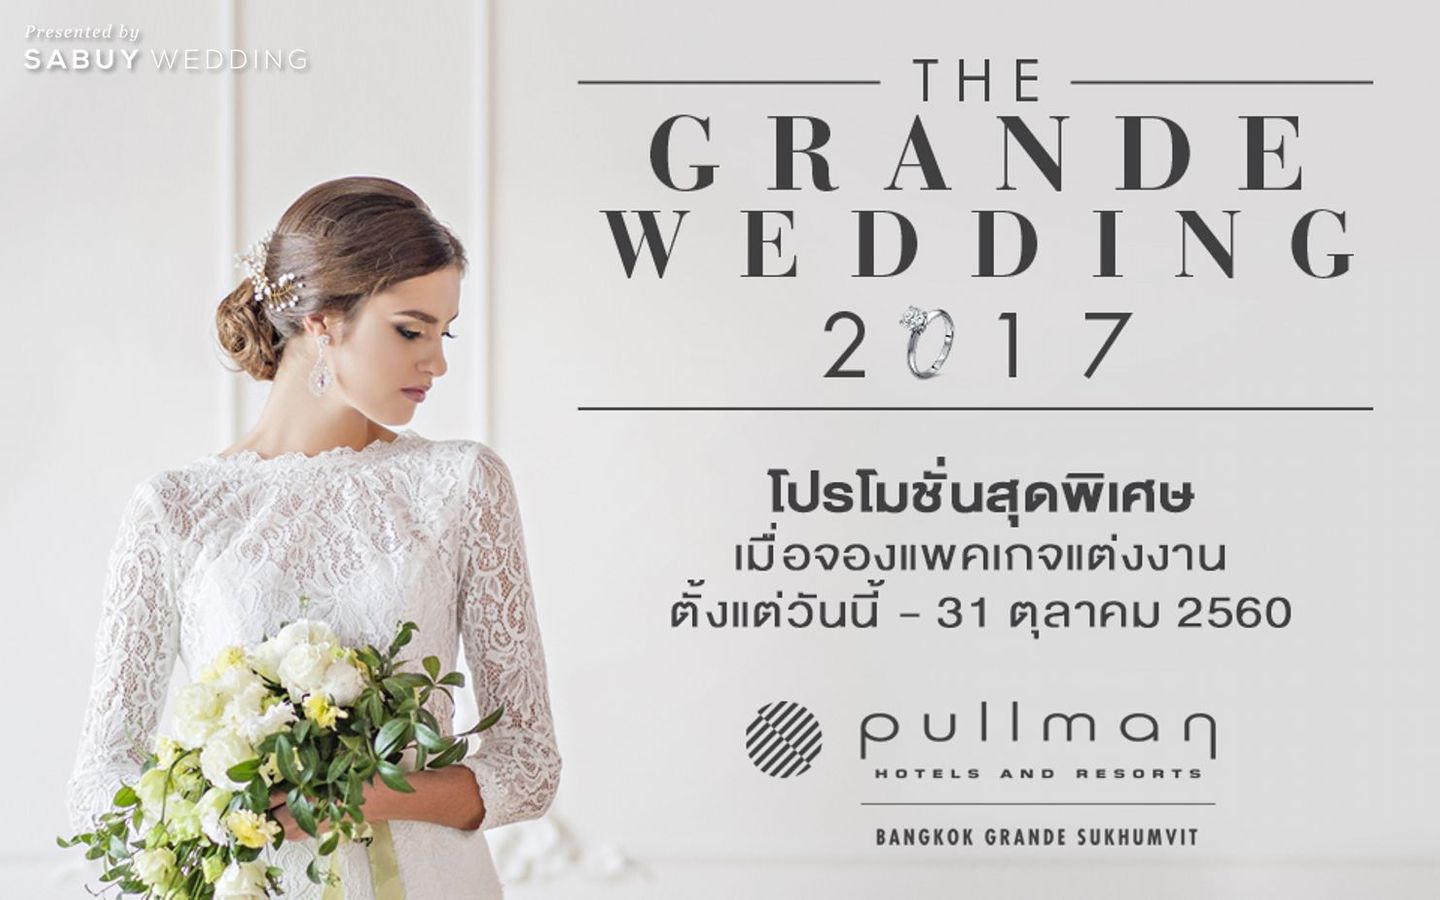 wedding fair,โรงแรม สัมผัสประสบการณ์สุดอิน ฟินเรื่องงานแต่งในงานเวดดิ้งแฟร์ 2017 @ Pullman Bangkok Grande Sukhumvit